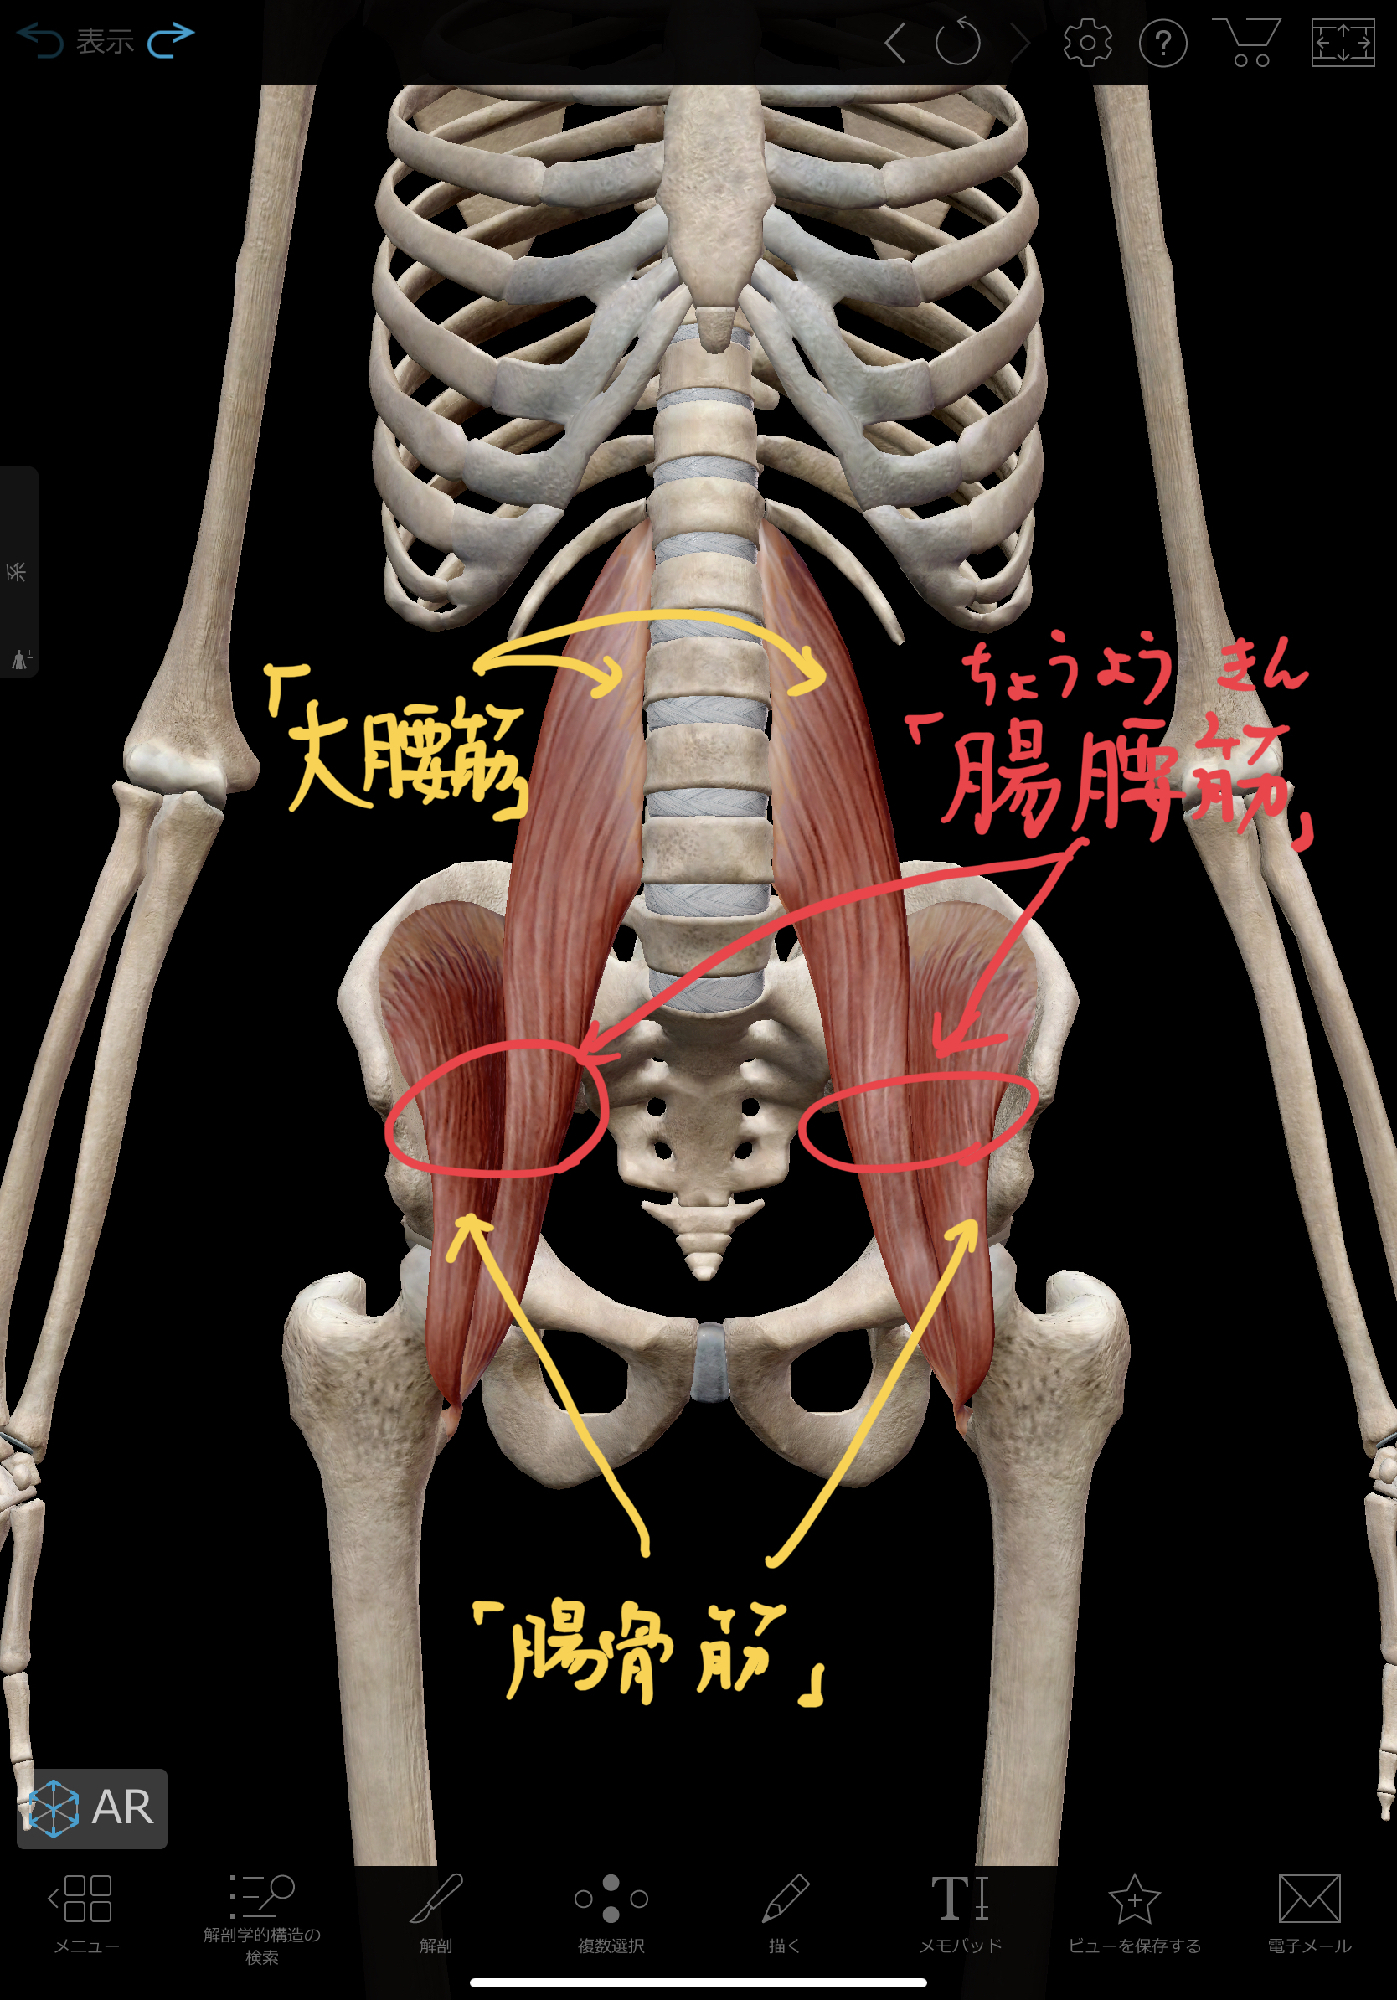 腰痛に効く 座ったままできる 股関節ストレッチ方法 腸腰筋編 理学療法士 安部元隆 マイベストプロ大分